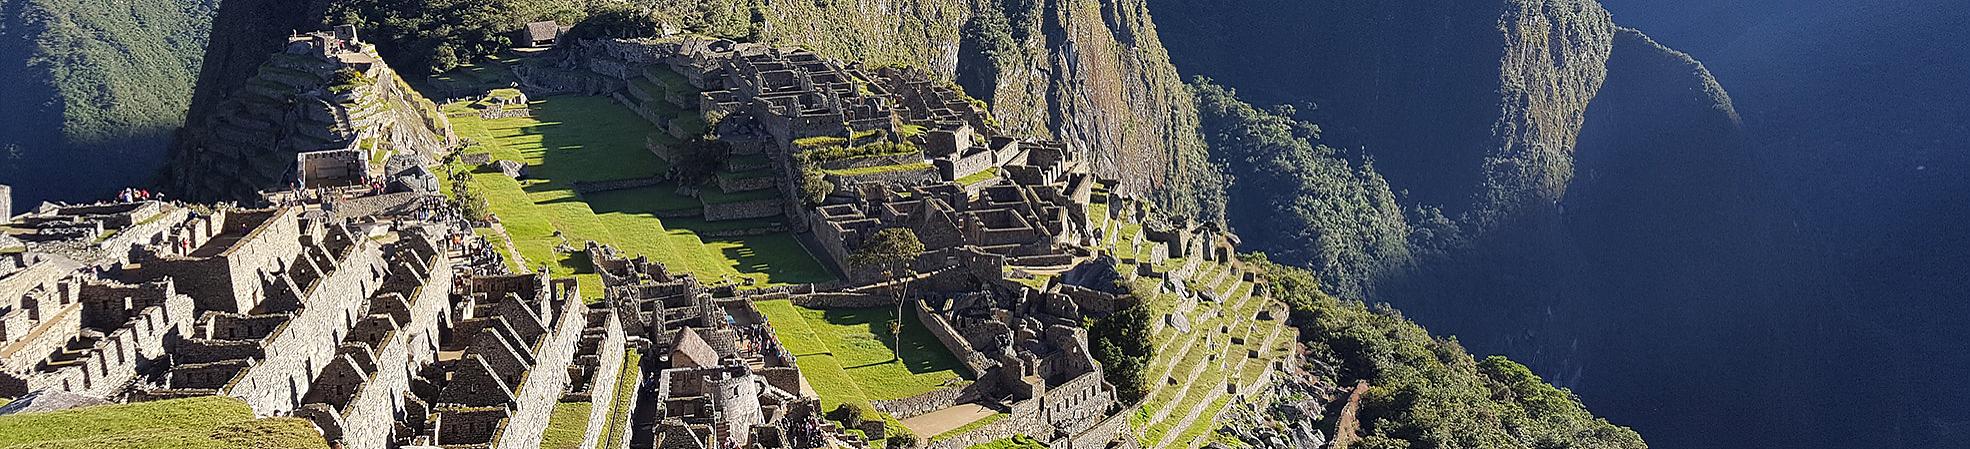 The View of Machu Picchu, Peru